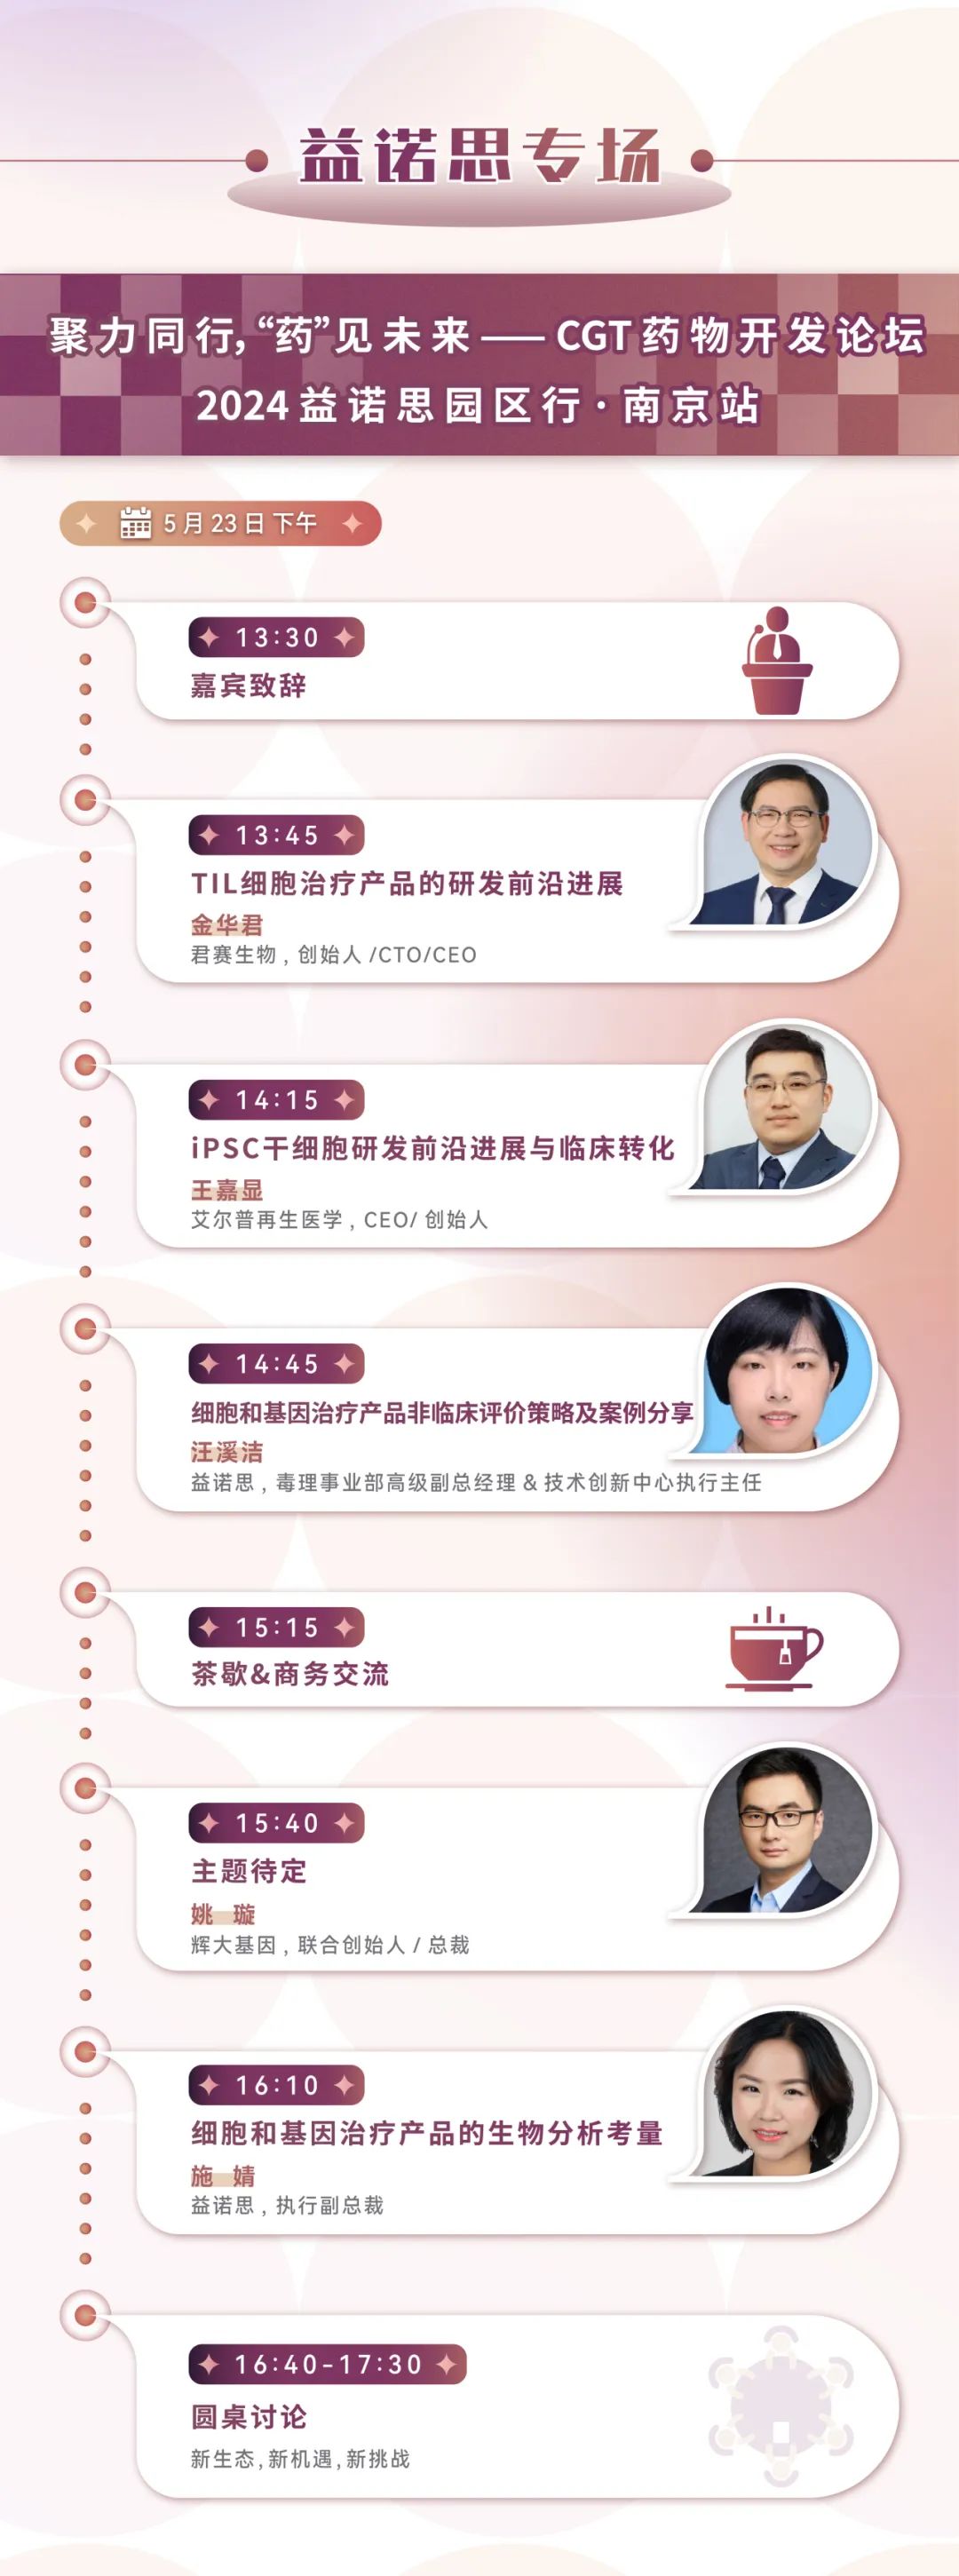 五月南京 | 妙顺生物邀您共赴CGCS 2024国际细胞与基因治疗中国峰会暨展览会(图22)